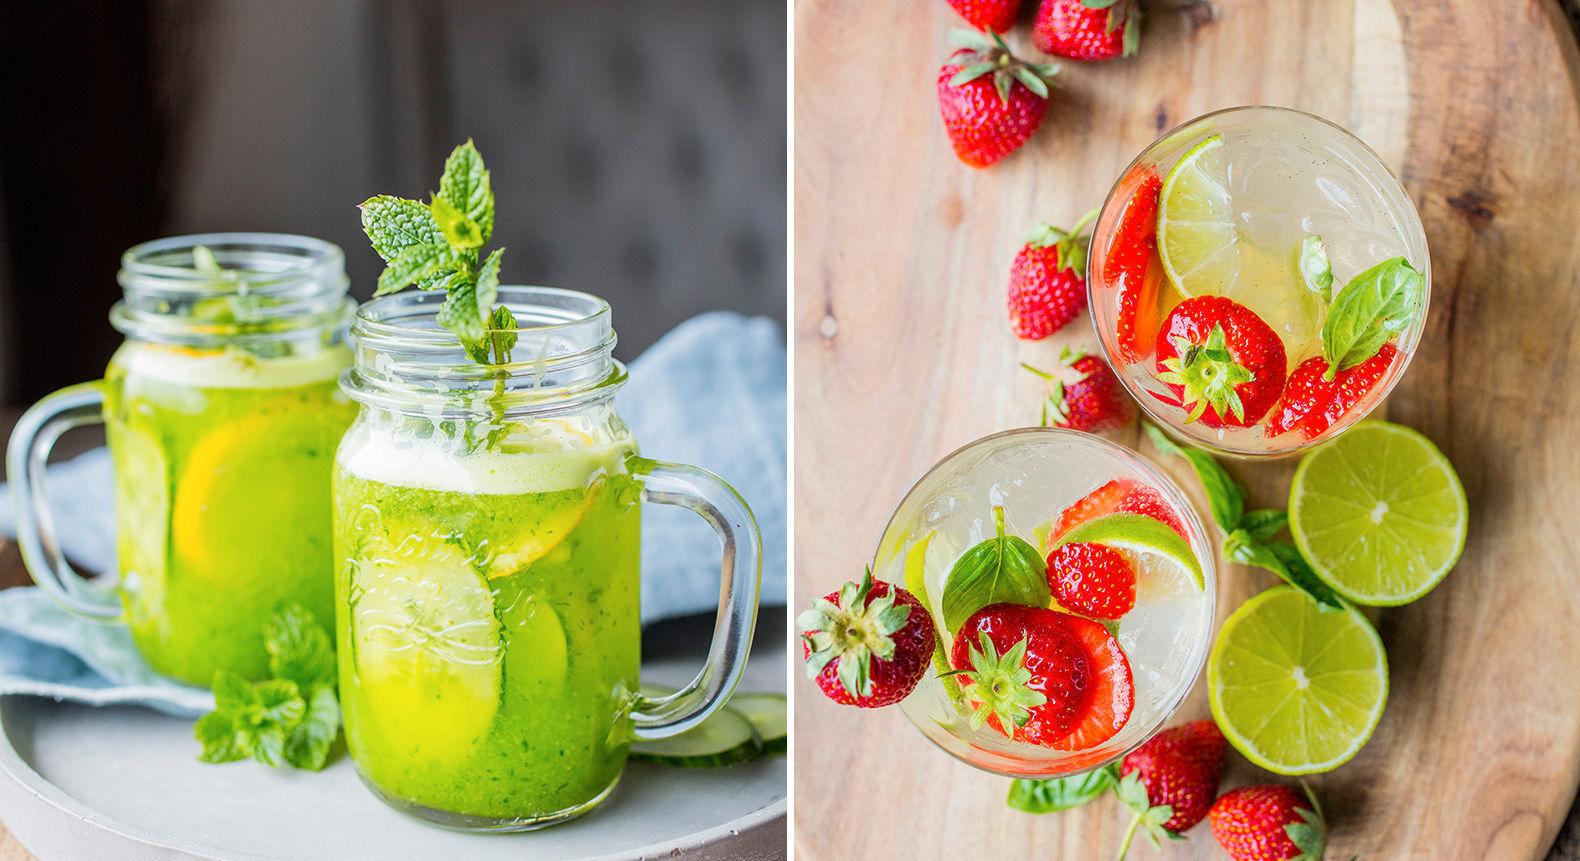 SOMMERGODT: Friske drinker hører med til sommeren - ha gjerne sommerens bær og frukter i glasset: både agurk og jordbær er digg i drinken. Foto. Sara Johannessen/VG.